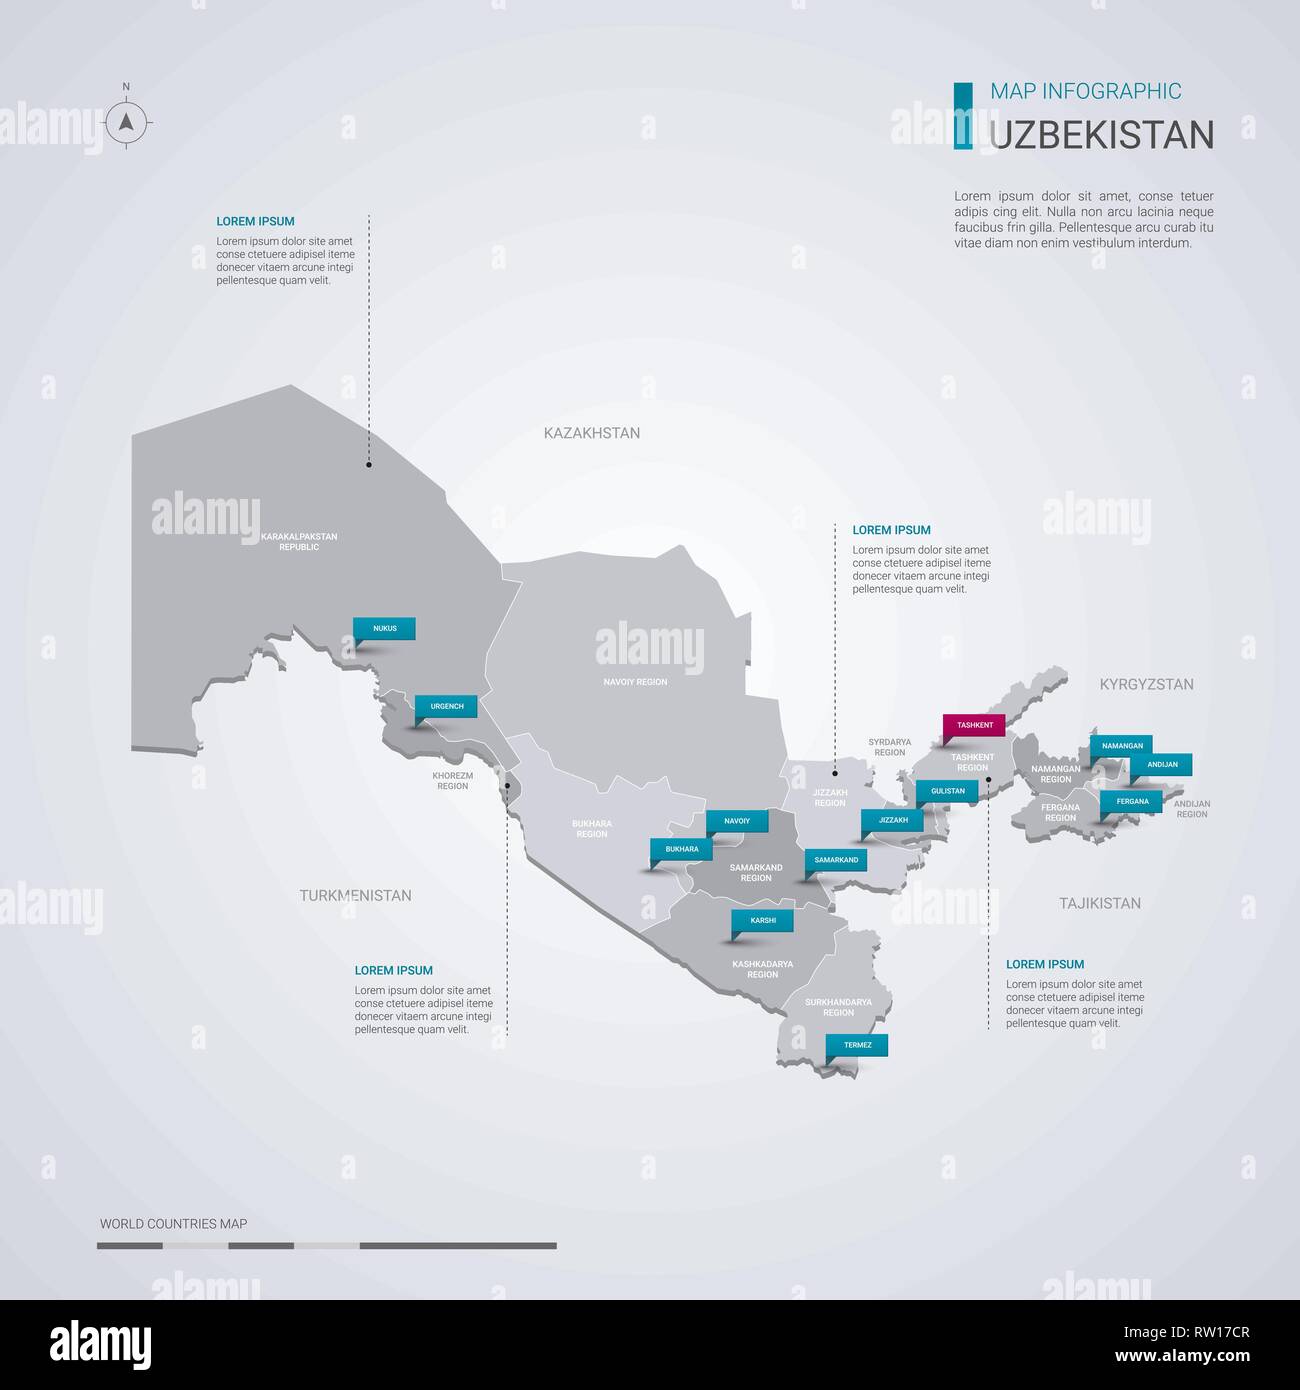 Uzbekistan mappa vettoriale con elementi infografico, segni di puntatore. Modello modificabile con regioni, città e capitale Tashkent. Illustrazione Vettoriale